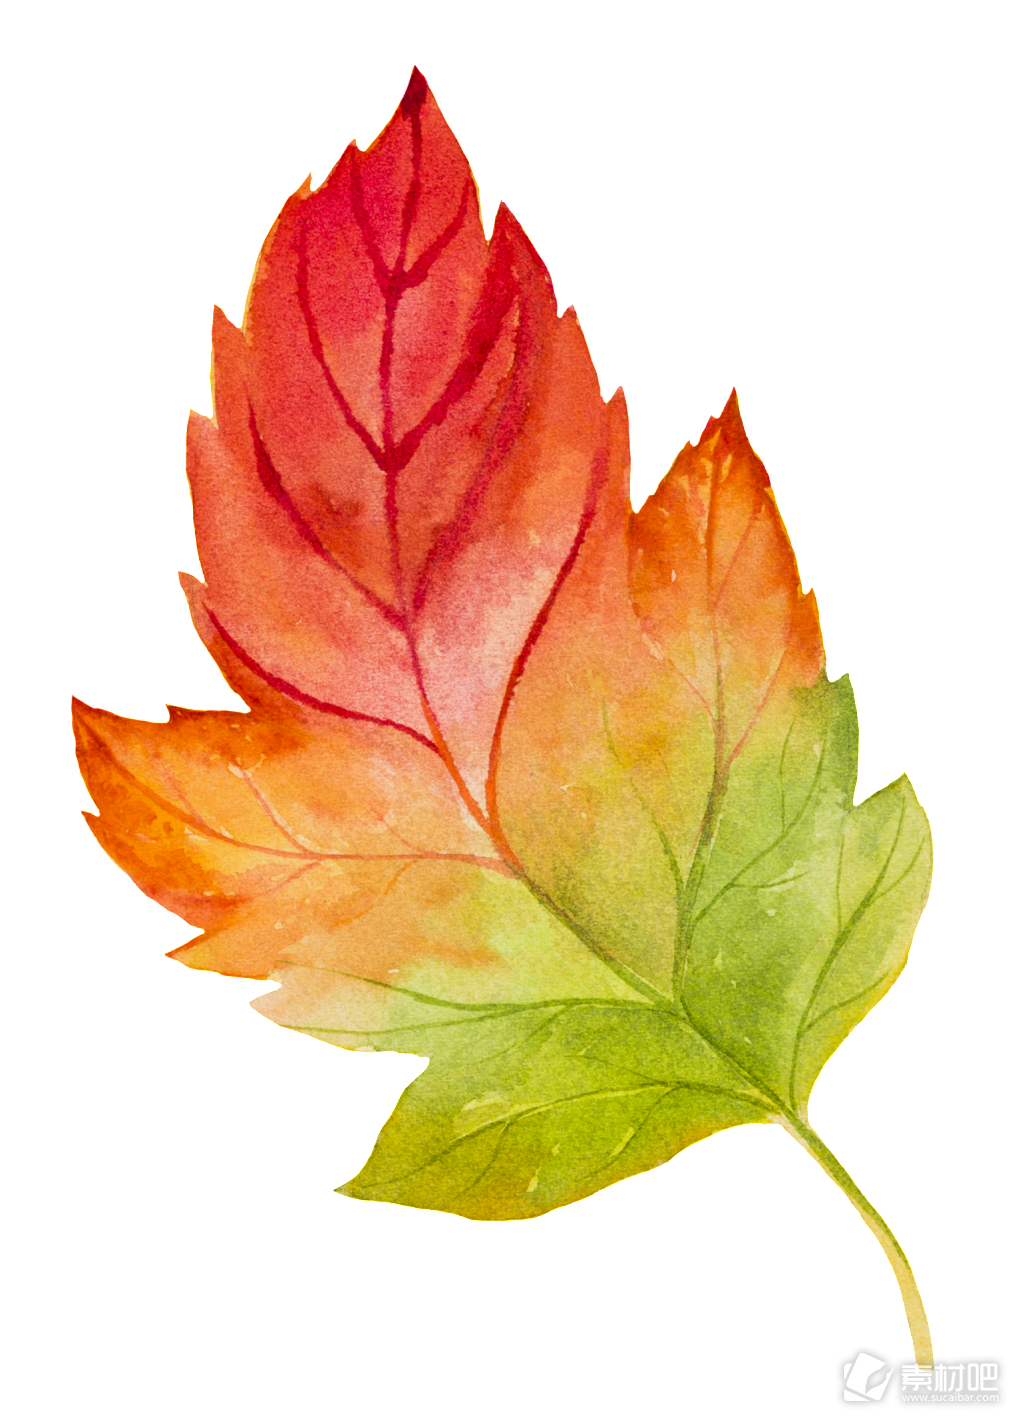 水彩树叶矢量素材 手绘水彩渐变的树叶矢量素材 素材吧